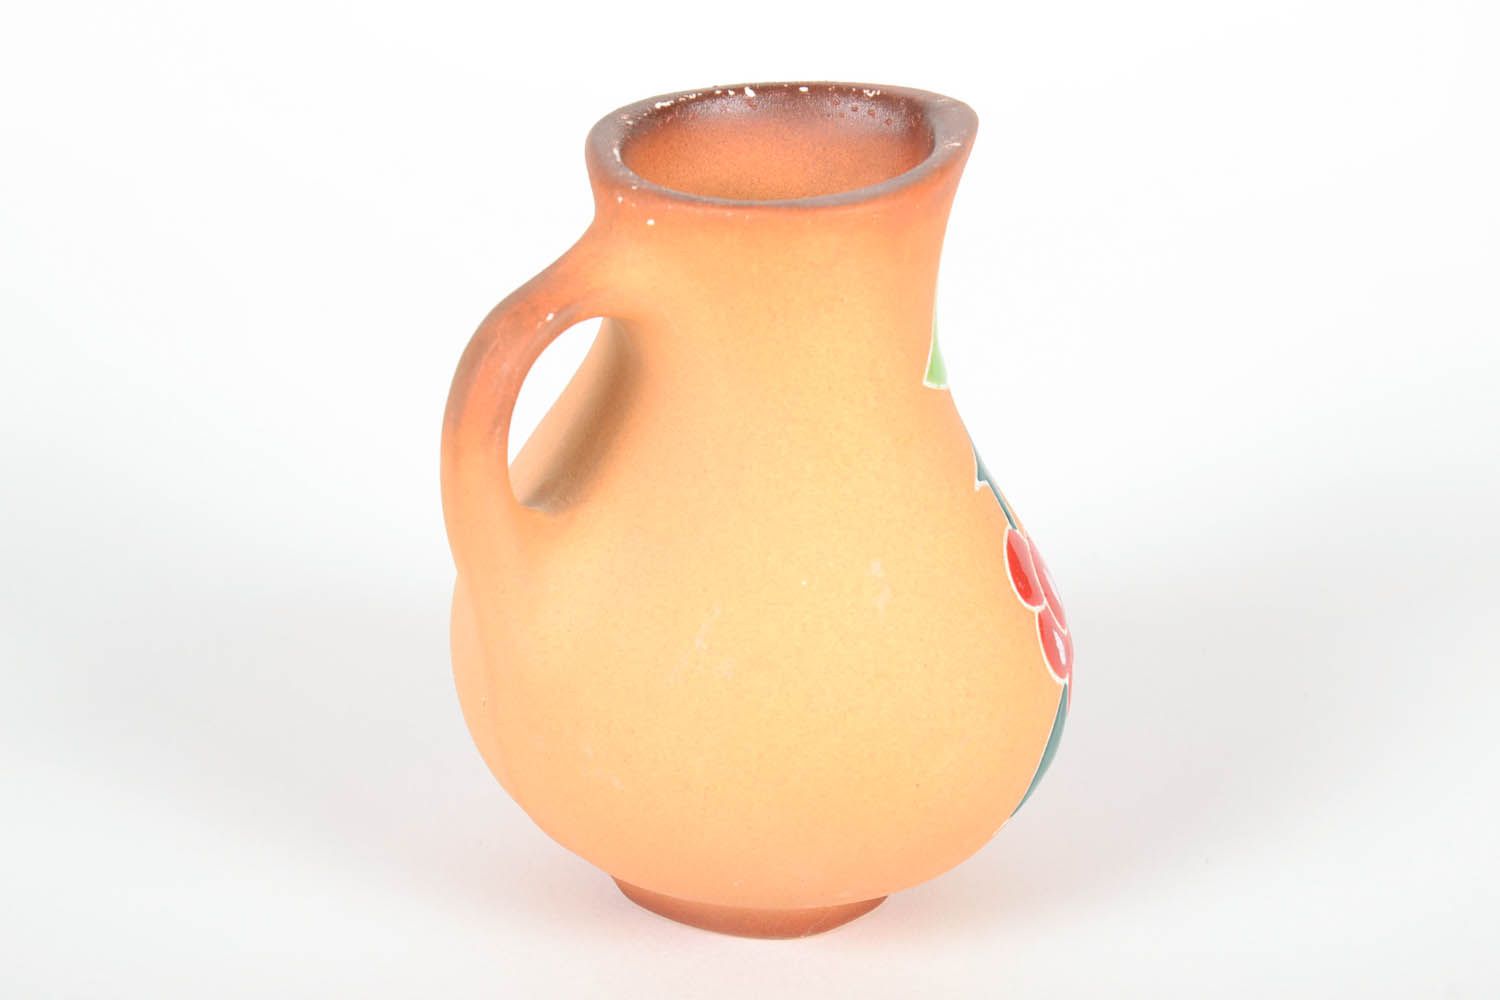 25 oz handmade ceramic water or mil or juice pitcher jug in beige color floral design 0,56 lb photo 4